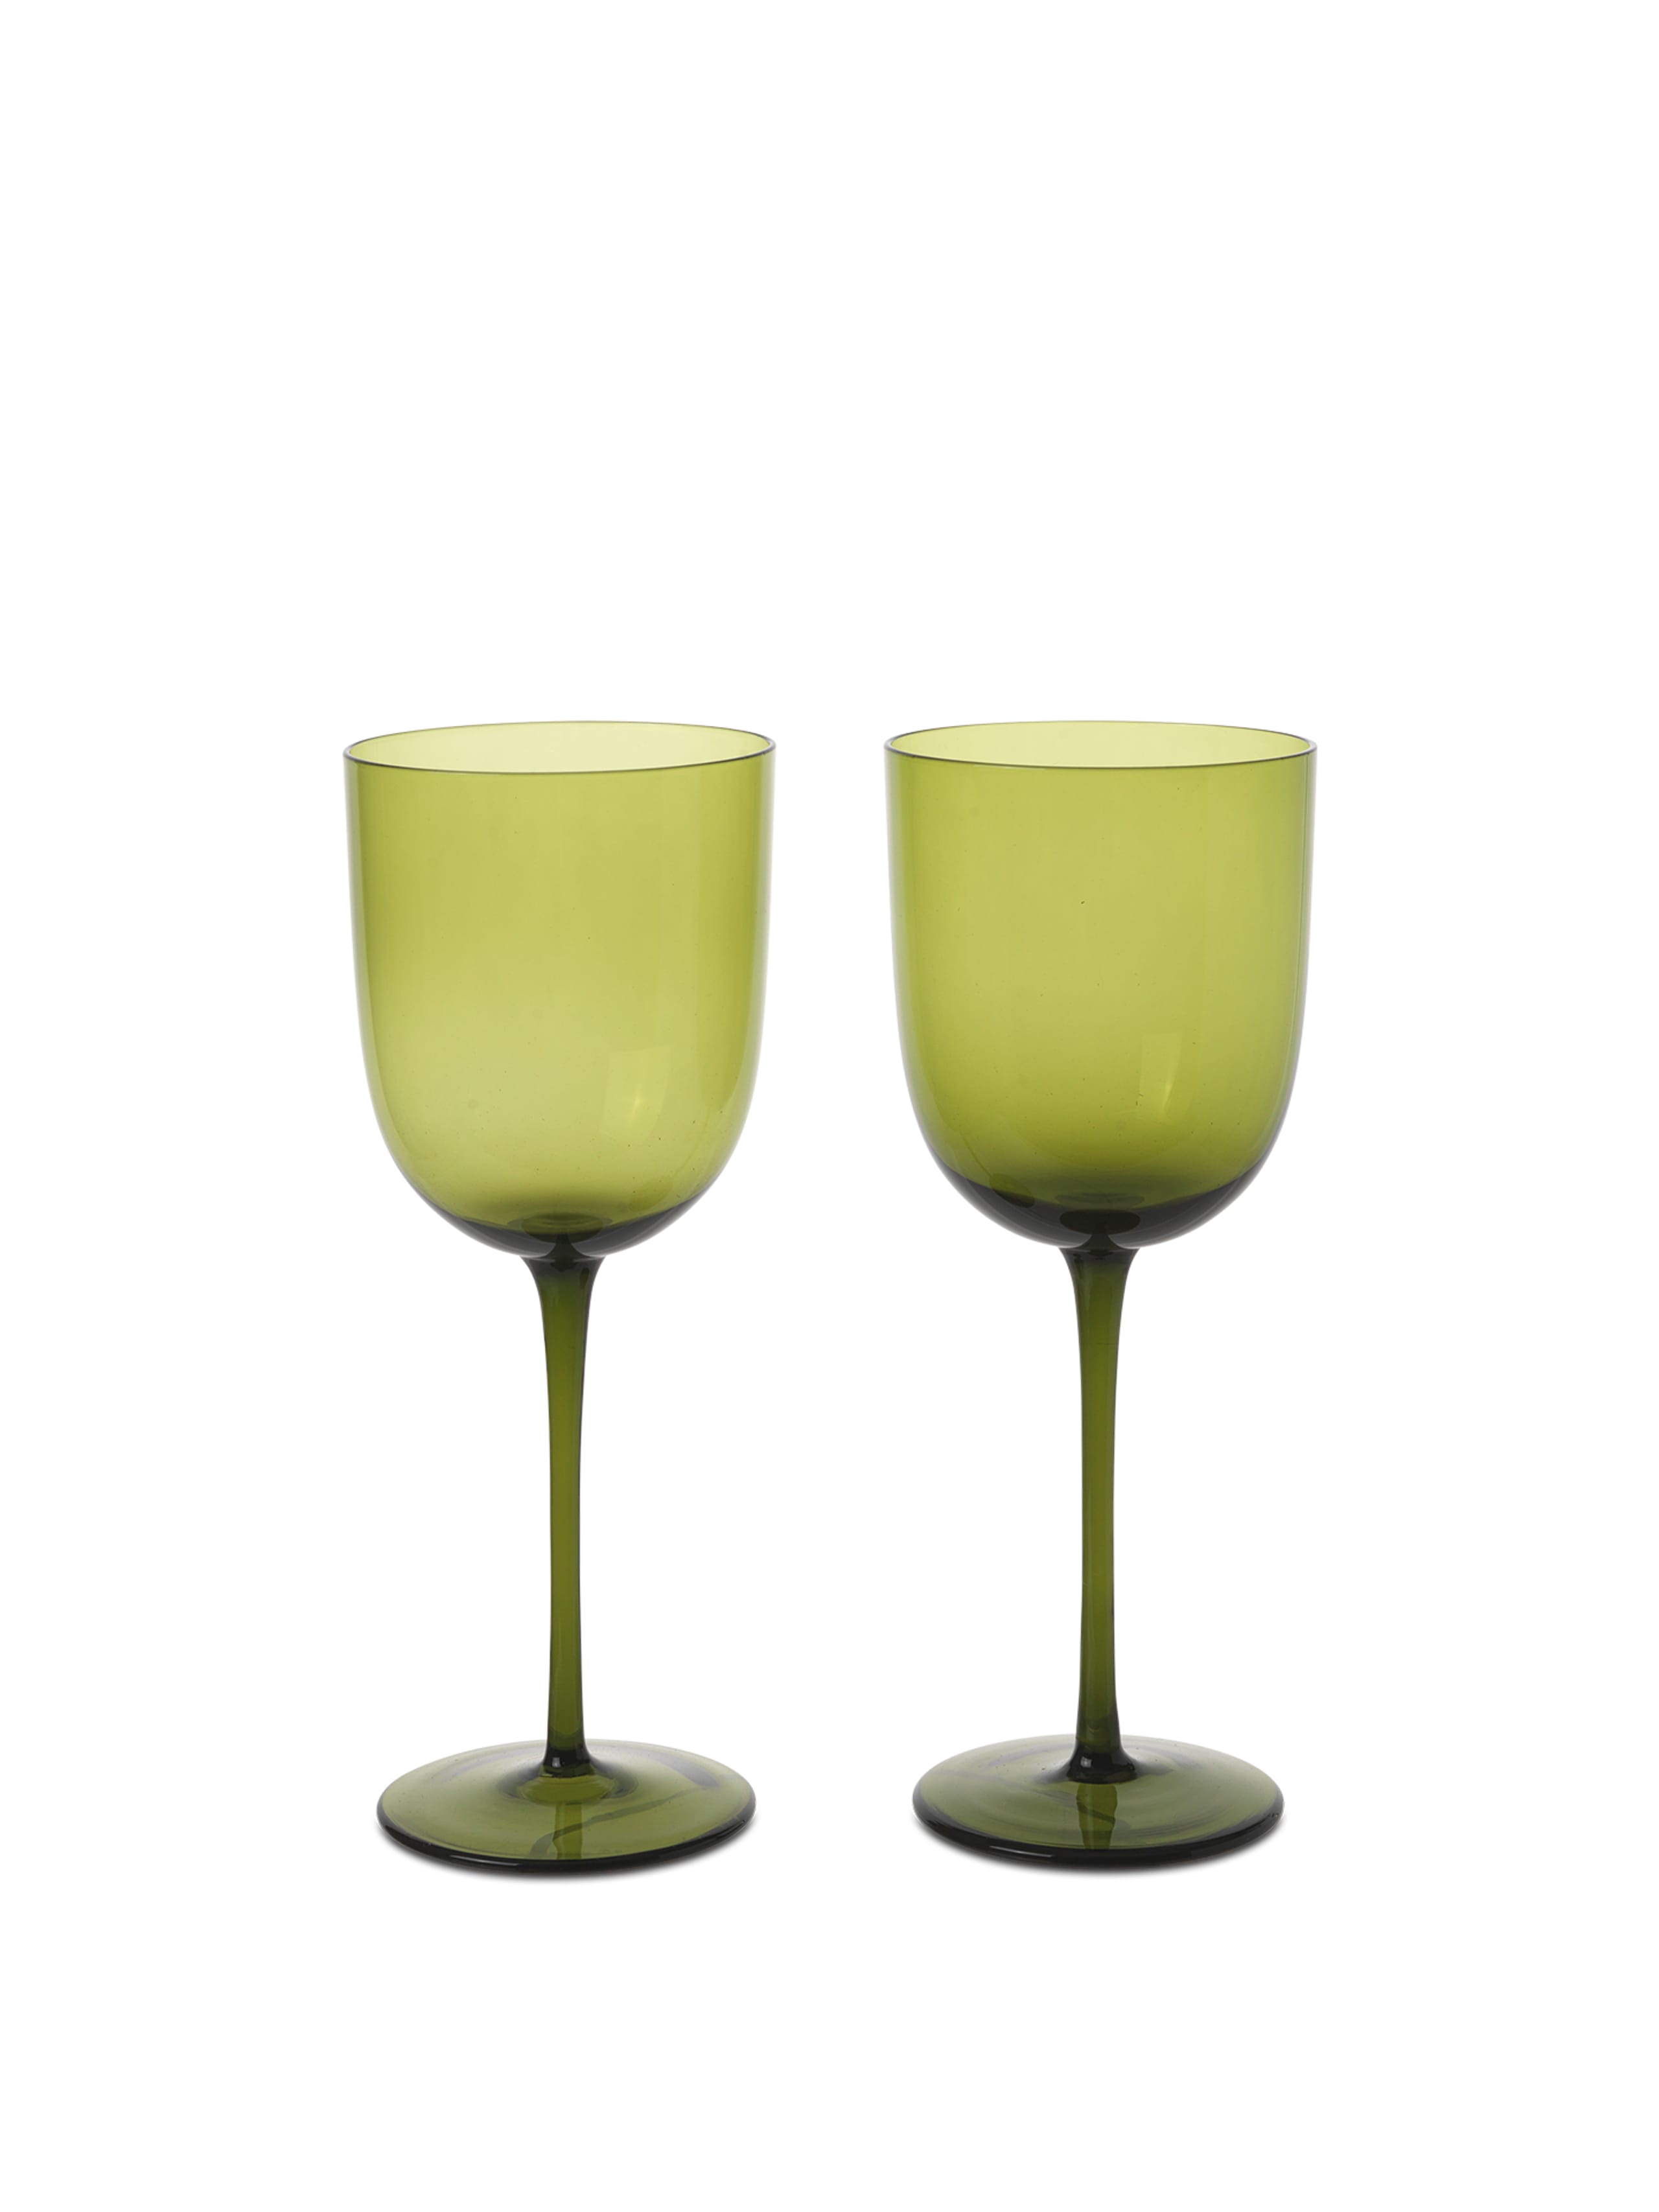 https://images.byflou.com/13/3/images/products/0/0/ferm-living-vinglas-ferm-living-host-white-wine-glasses-host-white-wine-glasses-set-of-2-moss-green-8004385.png.jpg